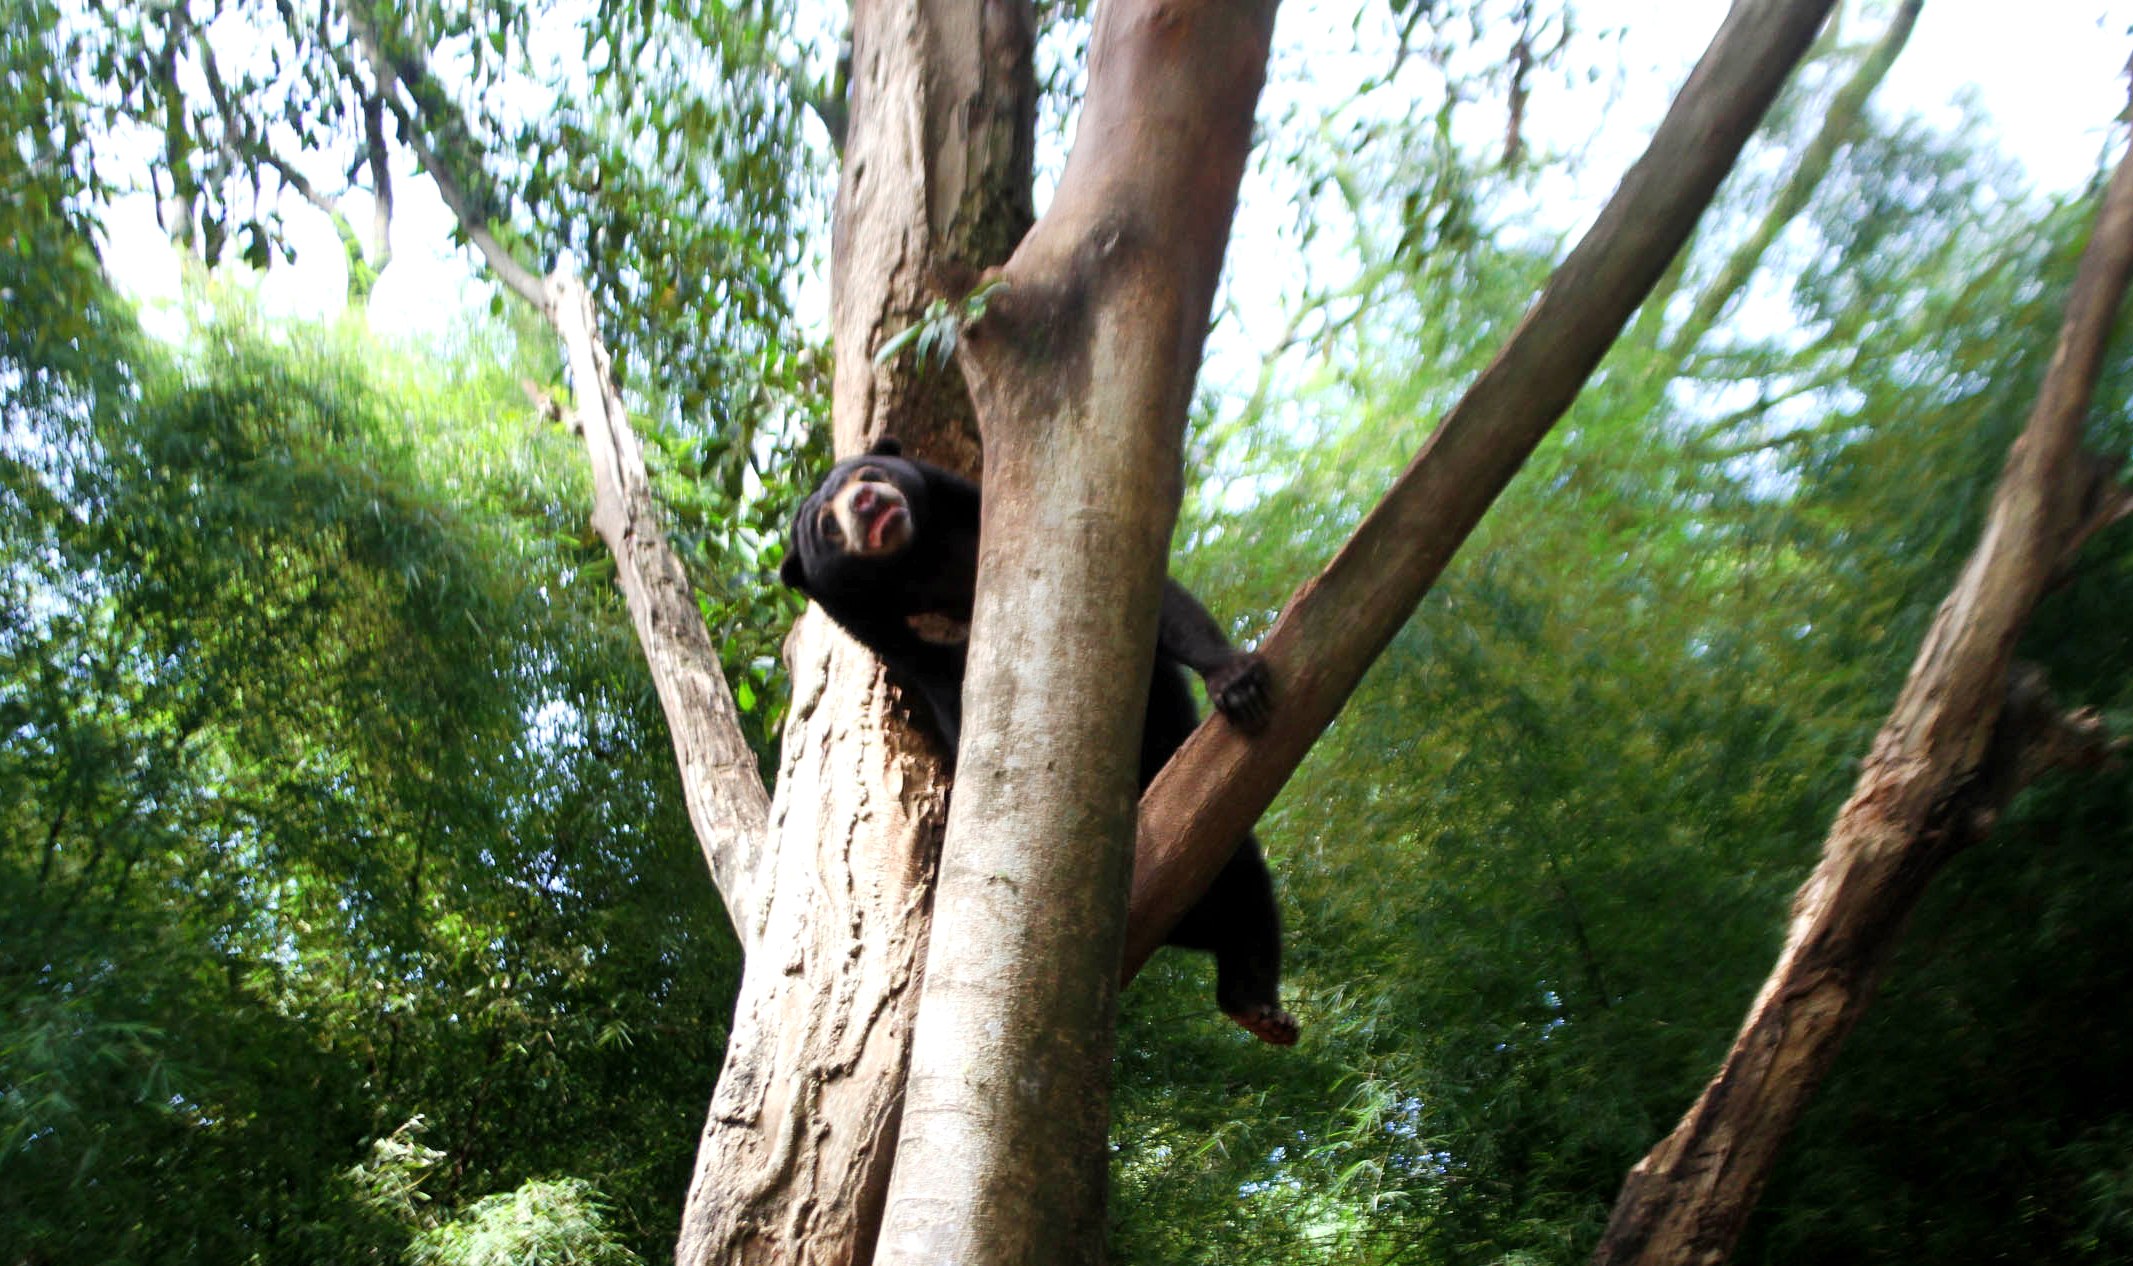 Beruang madu (Helarctus malayanus) menaiki pohon yang berada di kandang di Kebun Binatang Bandung (KBB), Jalan Tamanasari, Kota Bandung, Rabu (18/01/2017). Berdasarkan arahan Kementrian Lingkung Hidup dan Kehutanan, KBB dianjurkan untuk memperbaiki fasilitas penunjang kesejahteraan satwa. Foto : Donny Iqbal 